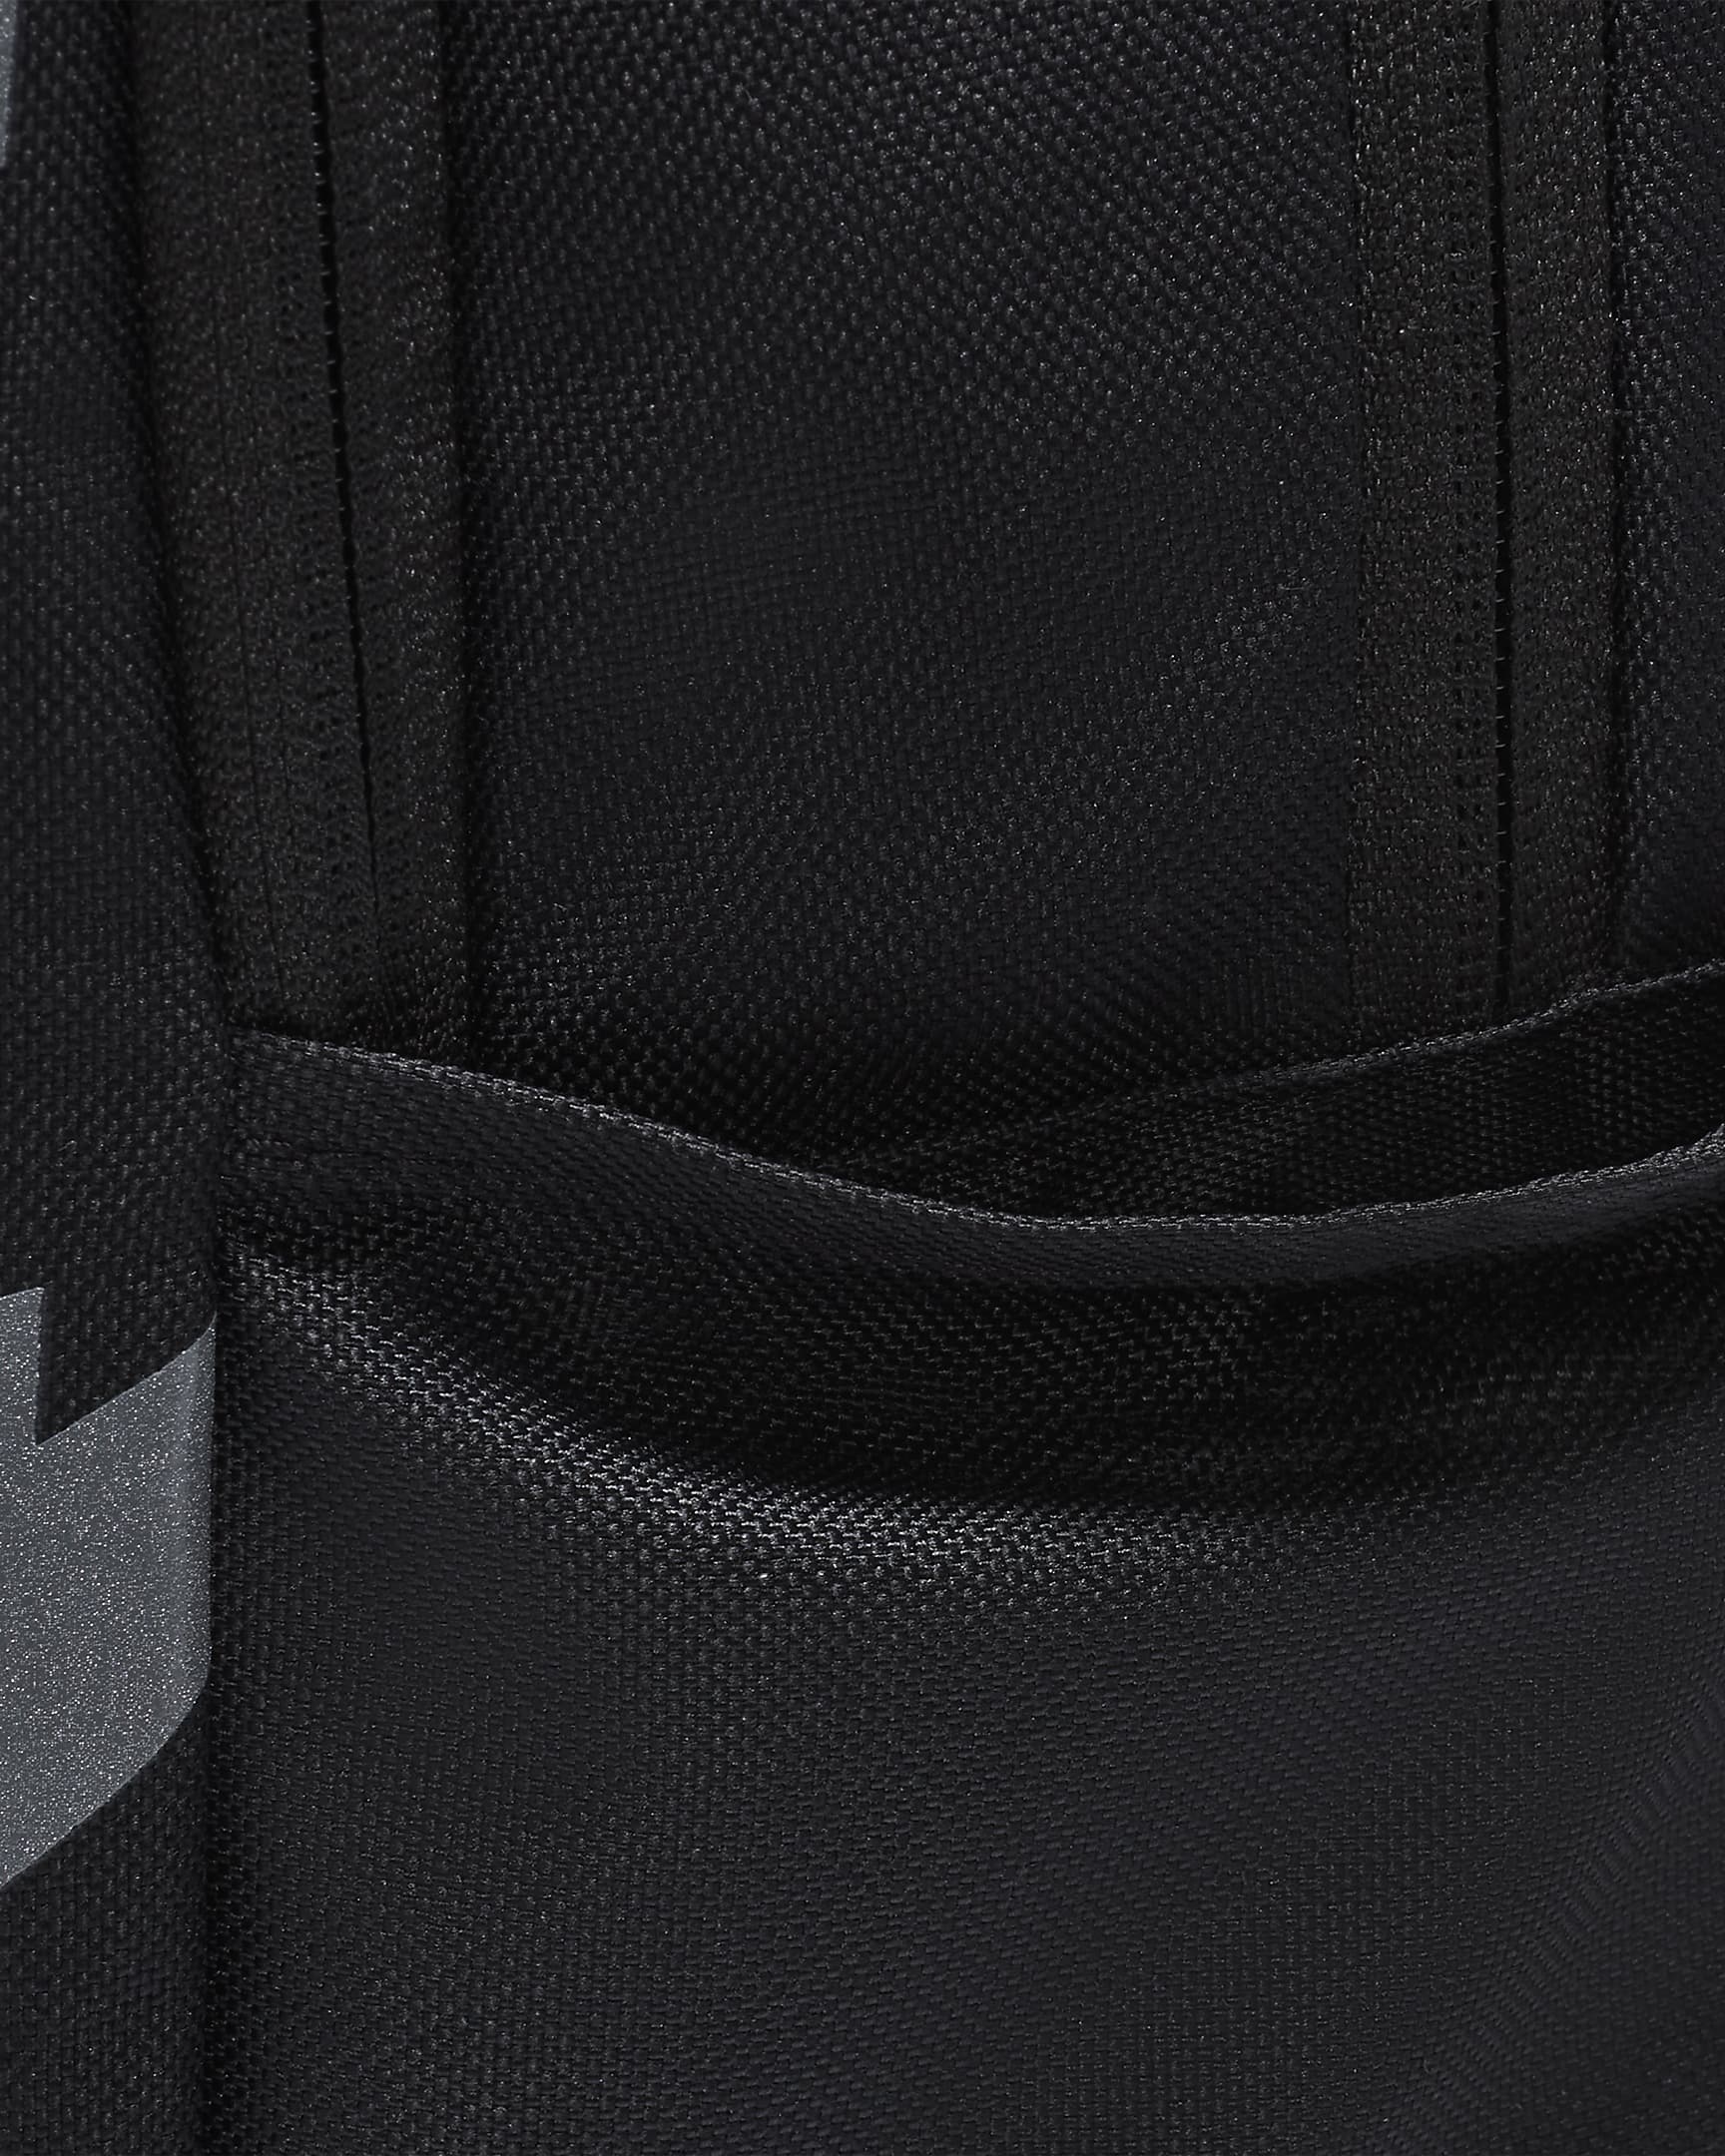 Nike Backpack (21L). Nike UK